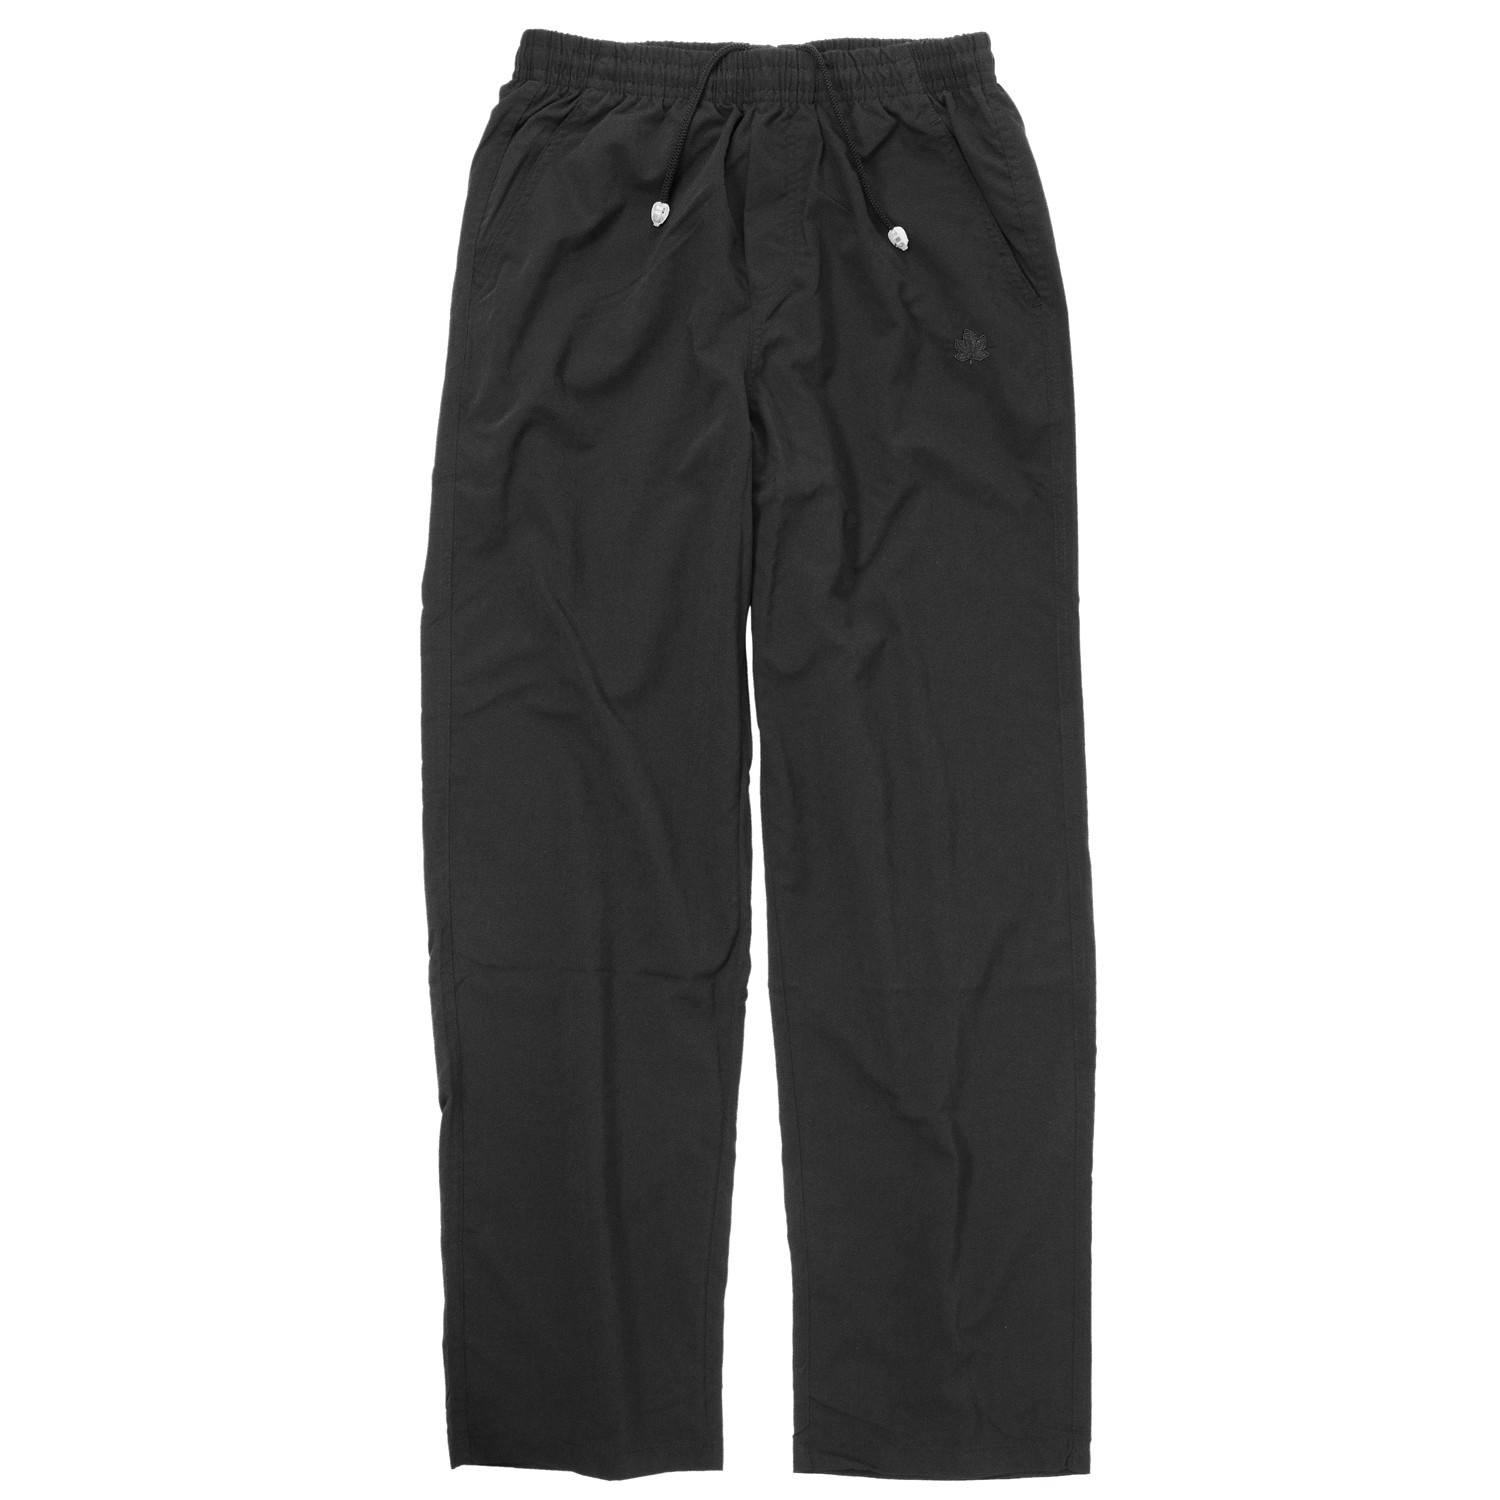 Pantalon fitness microfibre noir by Ahorn Sportswear grandes tailles jusqu'au 10XL